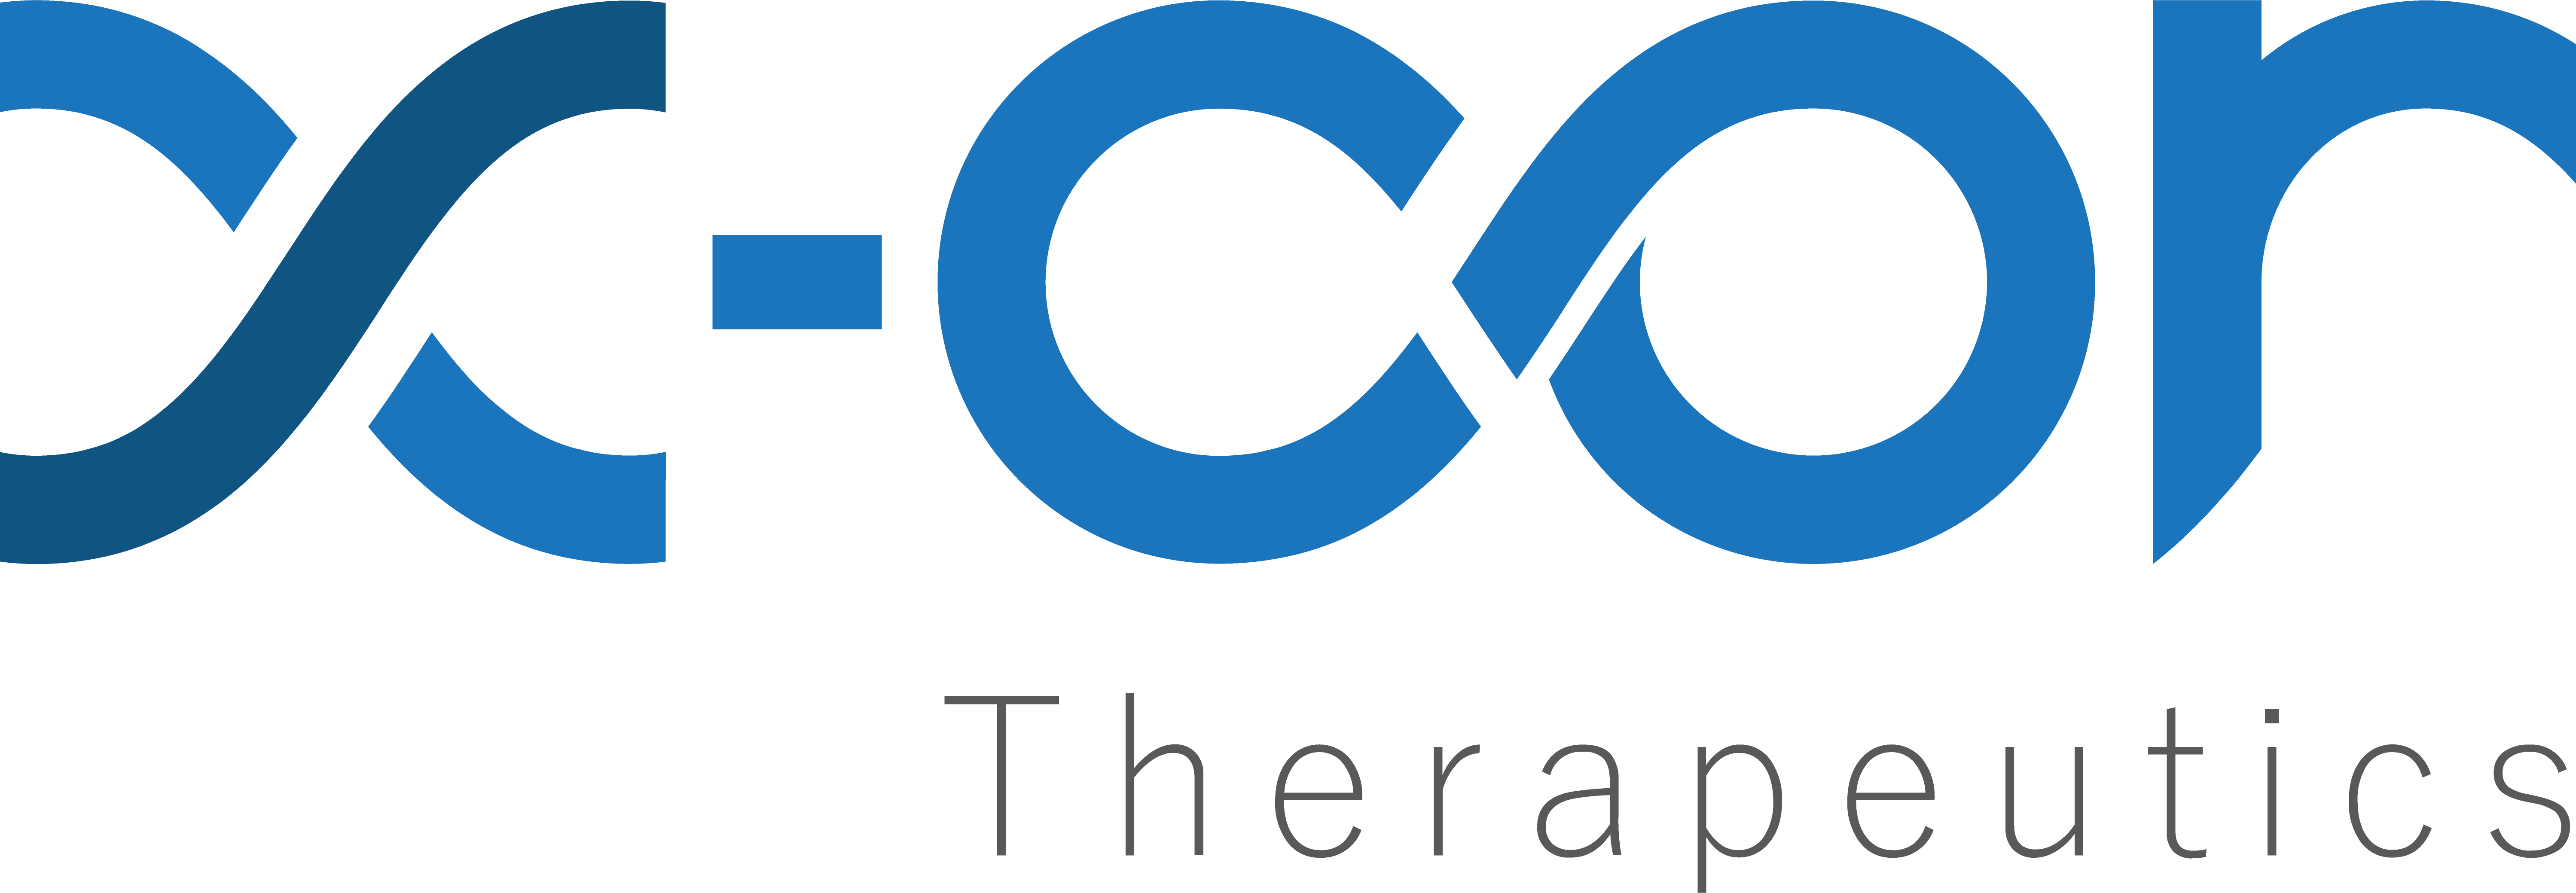 X-COR Therapeutics